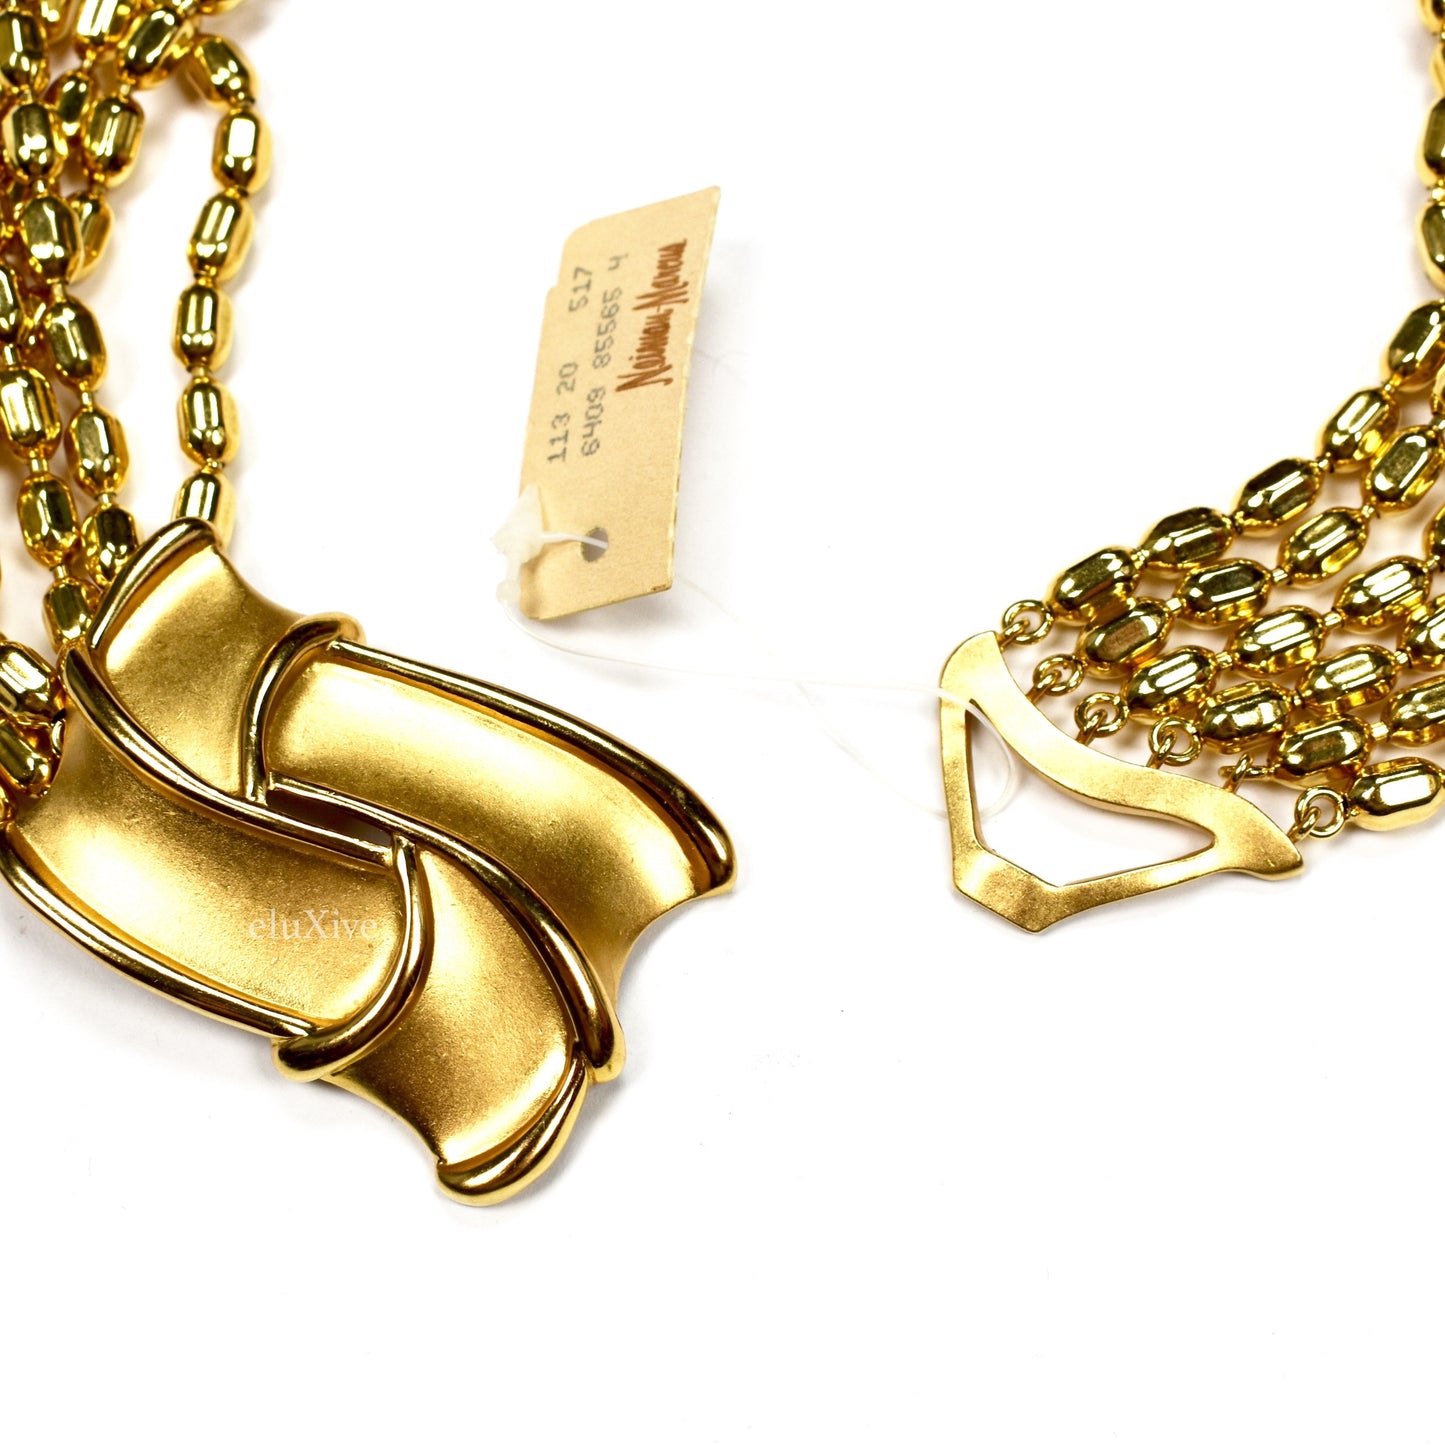 Yves Saint Laurent - Gold Multi-Strand Choker Necklace